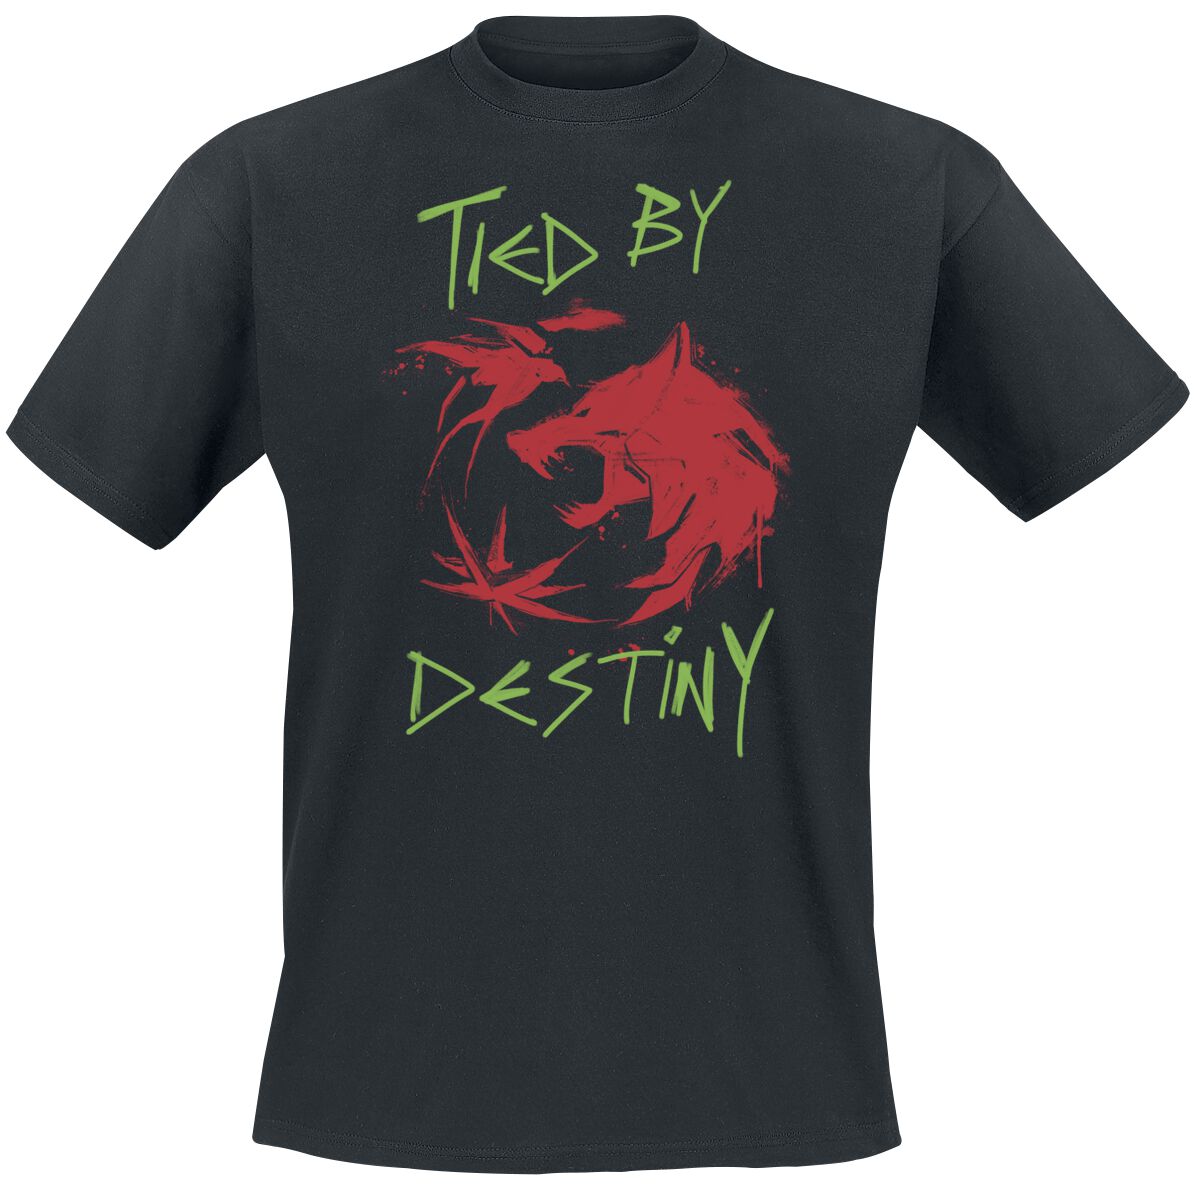 The Witcher T-Shirt - Season 3 - Destiny - S bis XXL - für Männer - Größe L - schwarz  - EMP exklusives Merchandise!